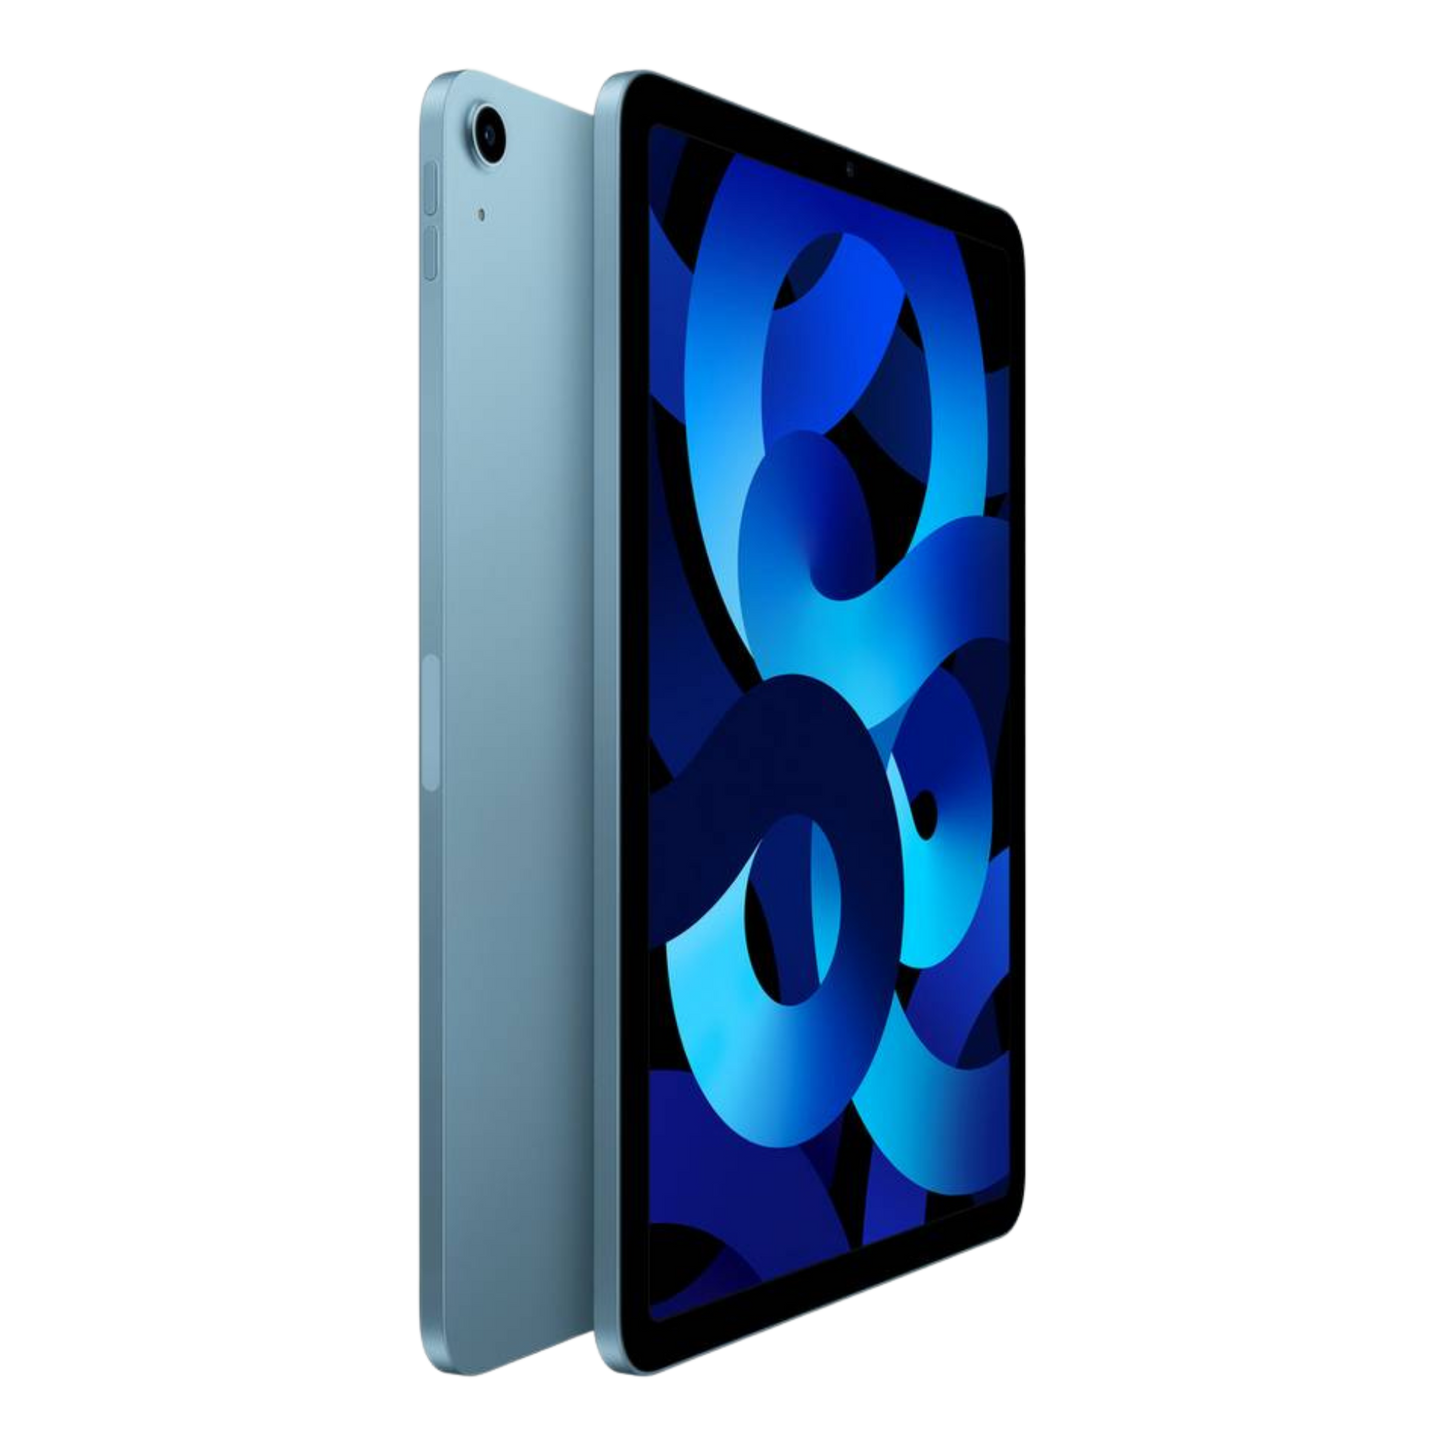 iPad Air - Blue